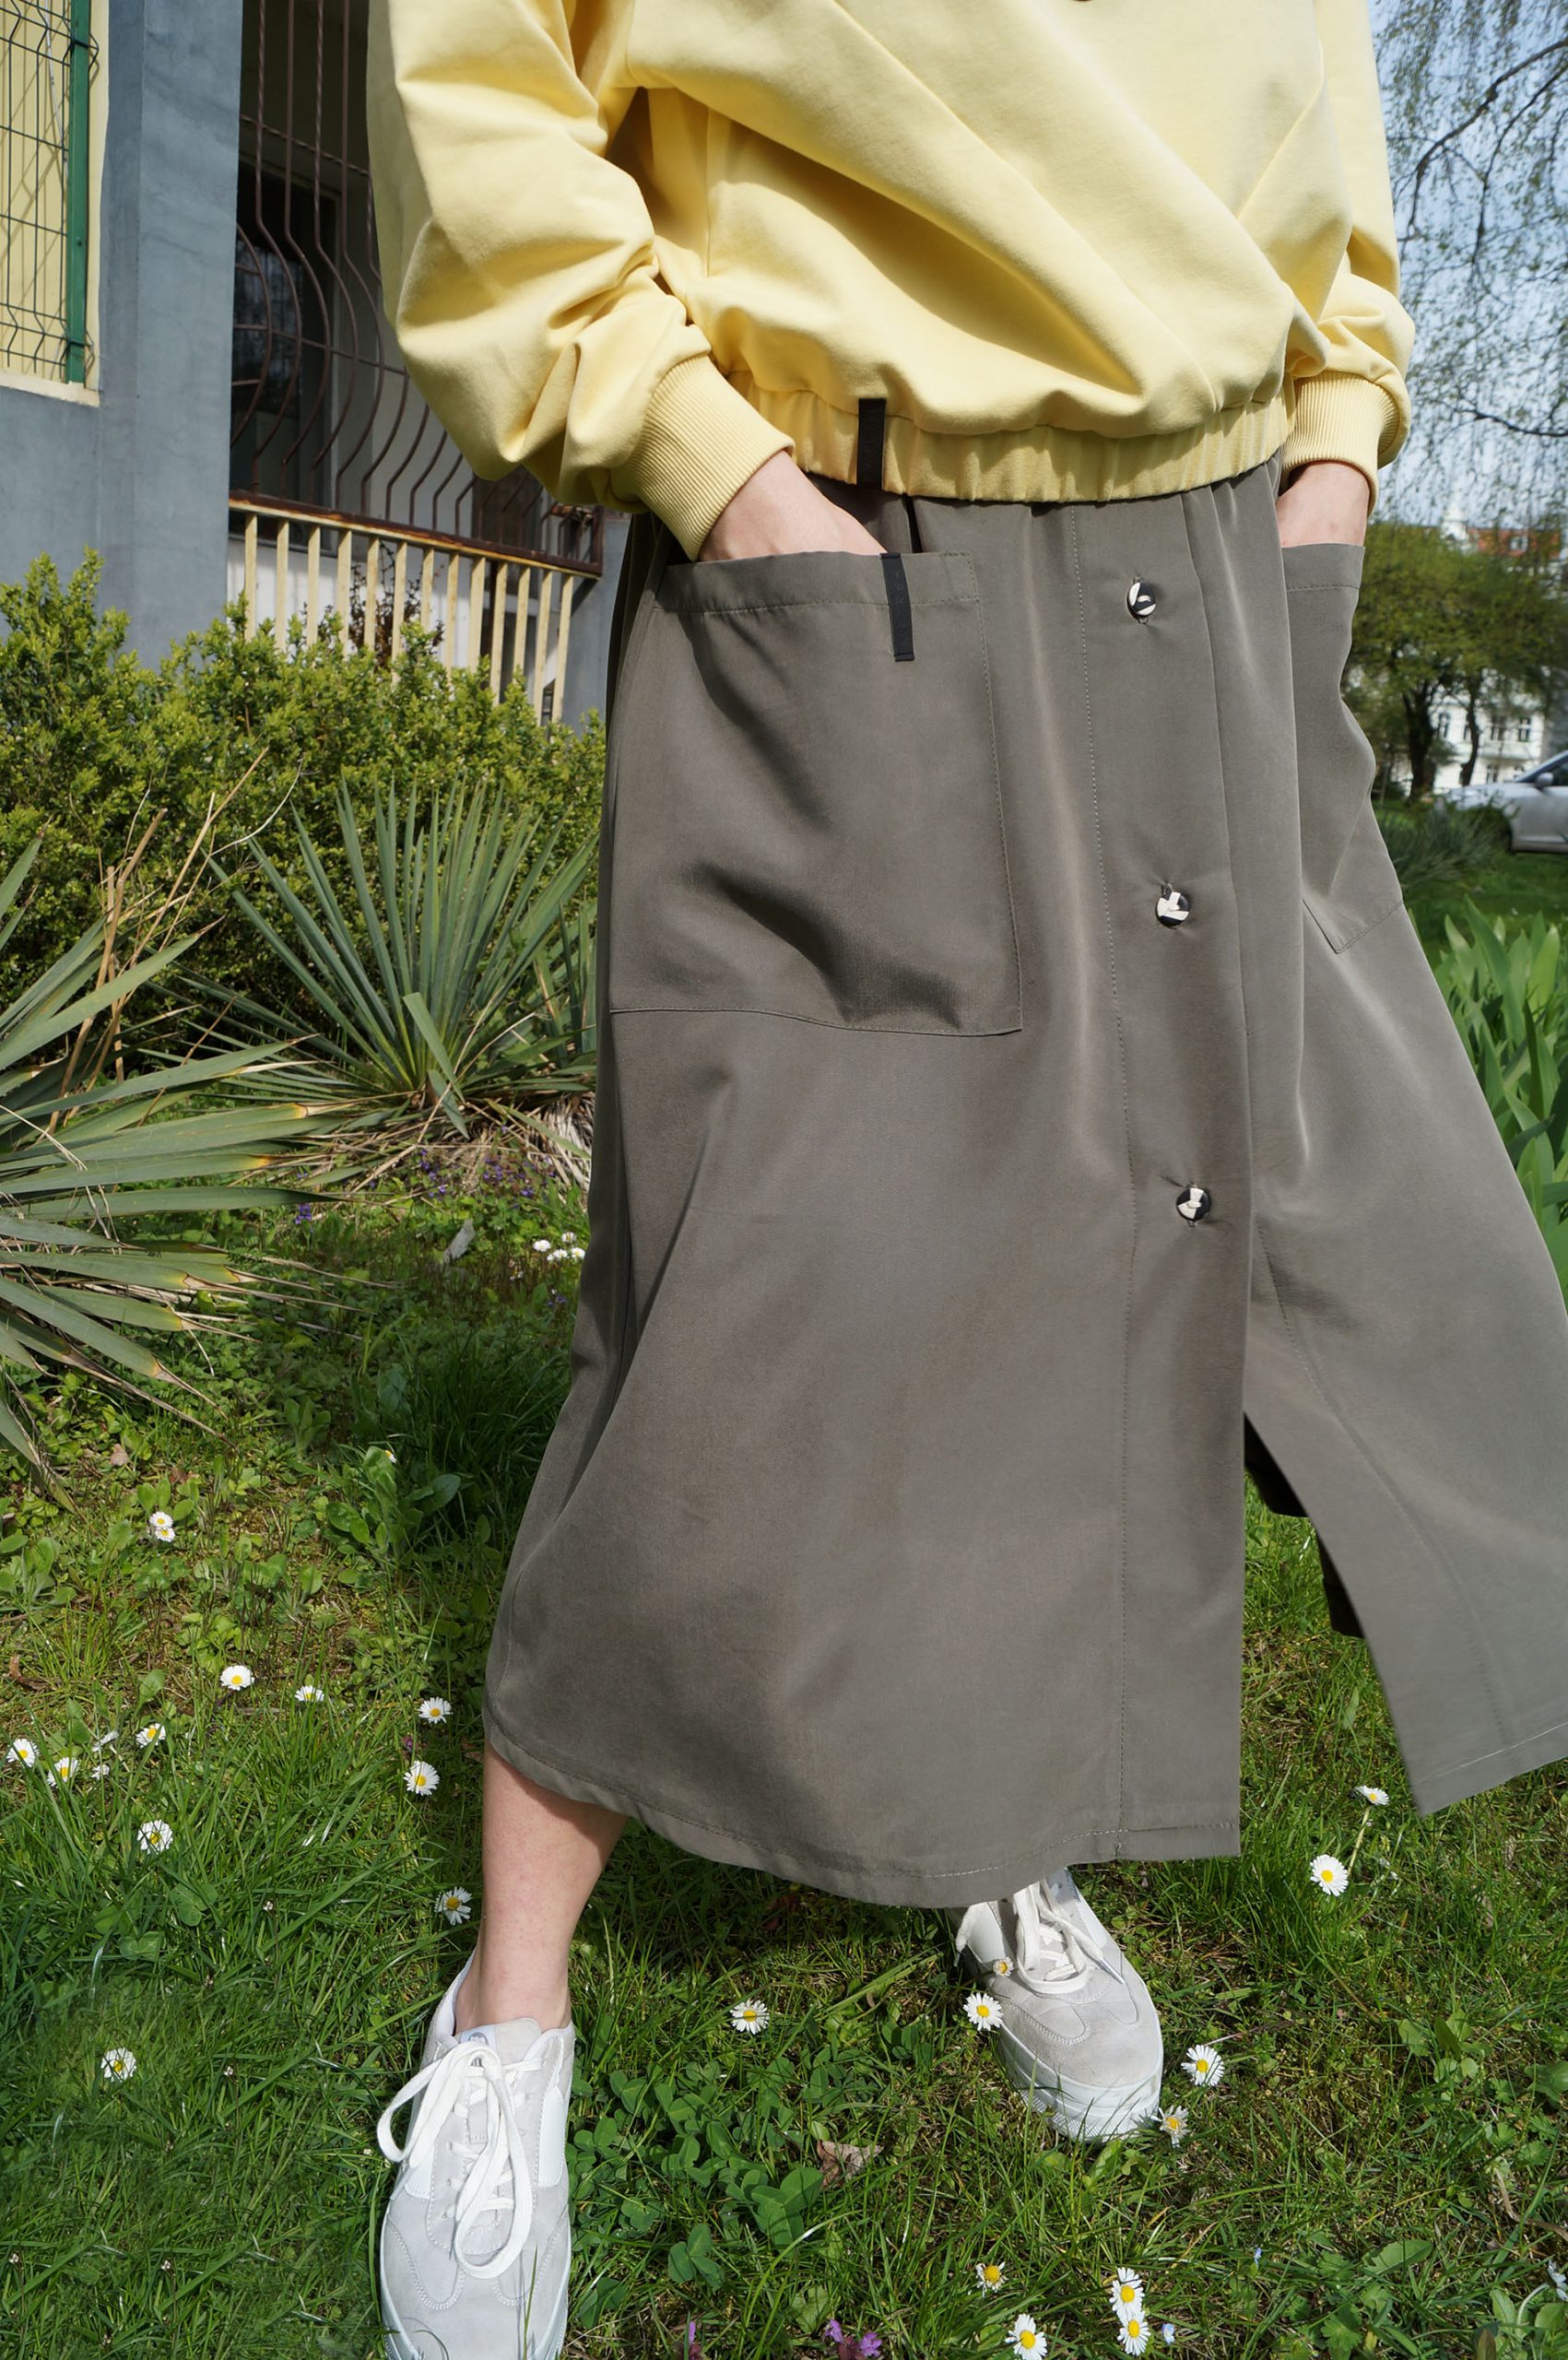 spódnica MECH- Długa damska spódnica w kolorze zieleni khaki/oliwkowej. Szyta ręcznie w polsce. Autorskie unikatowe wzorzyste guziki.